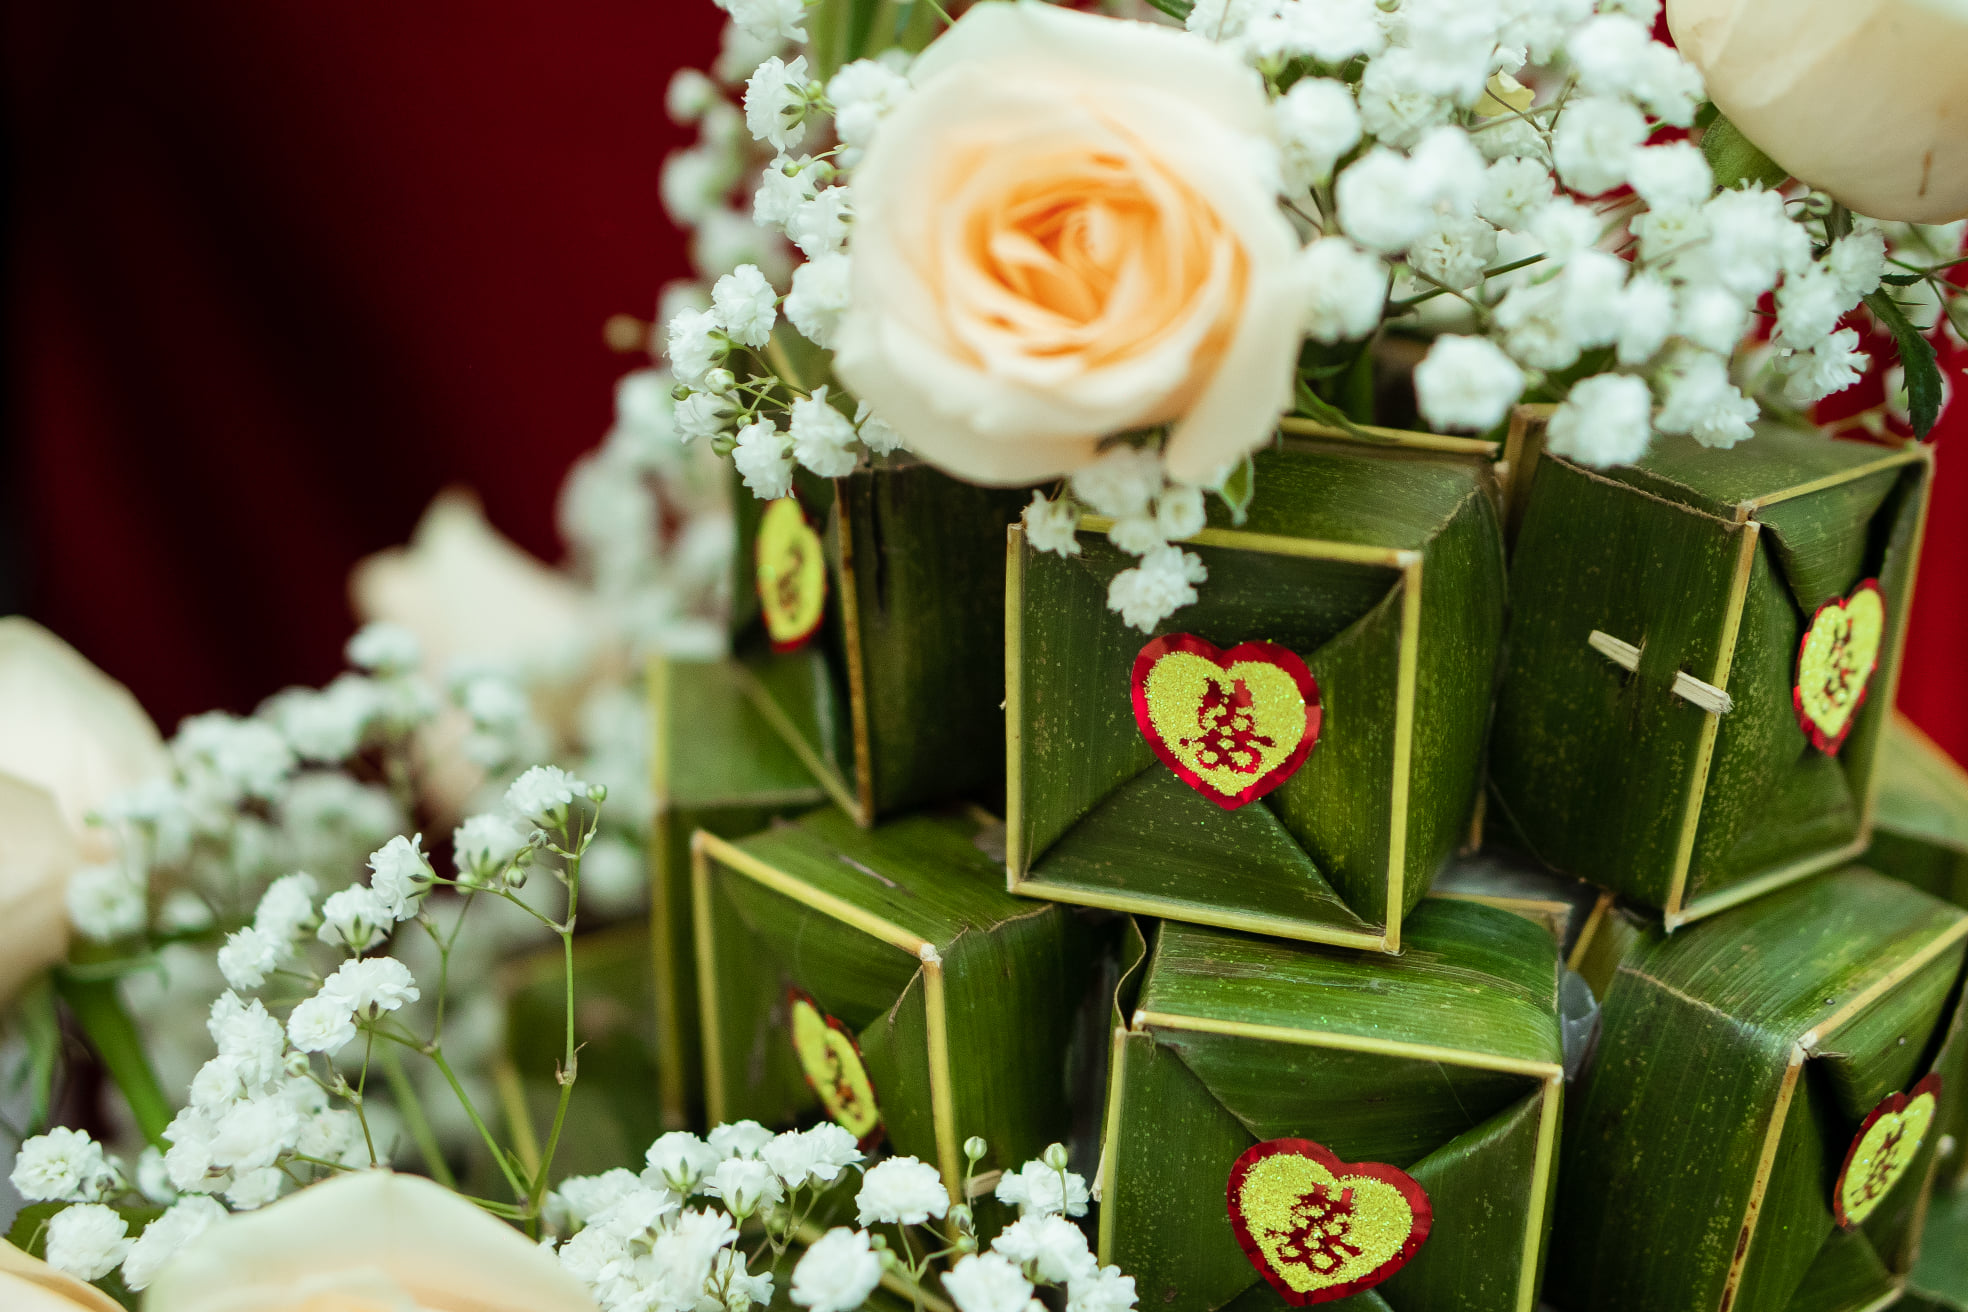 Dịch vụ cưới hỏi trọn gói Biển Vàng - địa chỉ cung cấp dịch vụ làm mâm quả tại Nha Trang uy tín